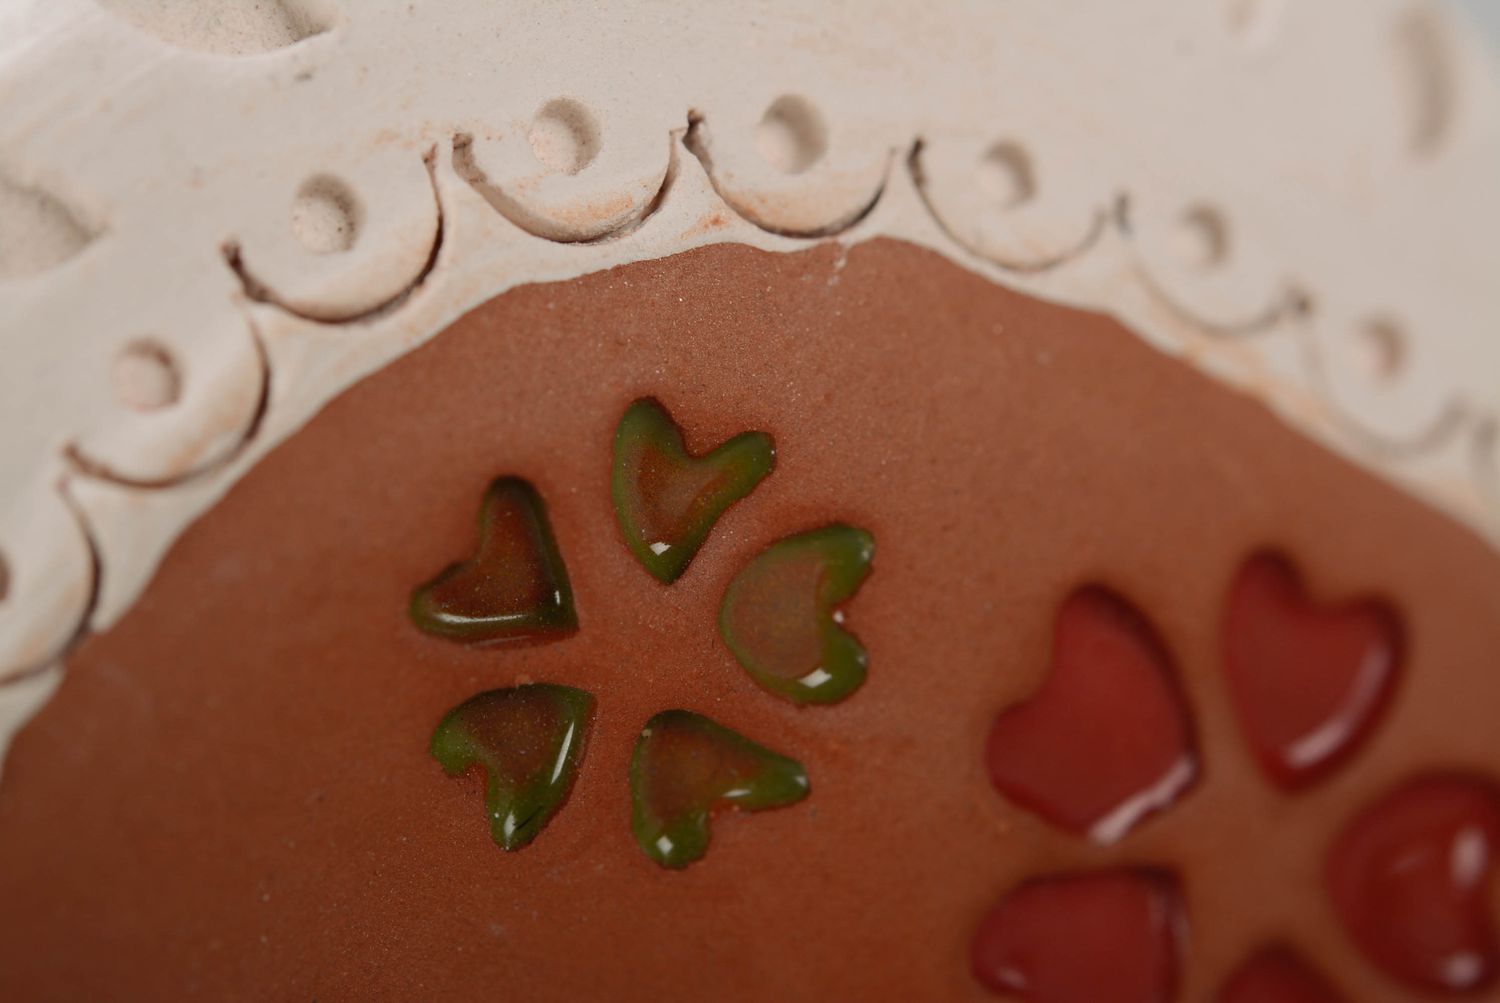 Caballito de arcilla con corazoncitos verdes y rojos foto 5